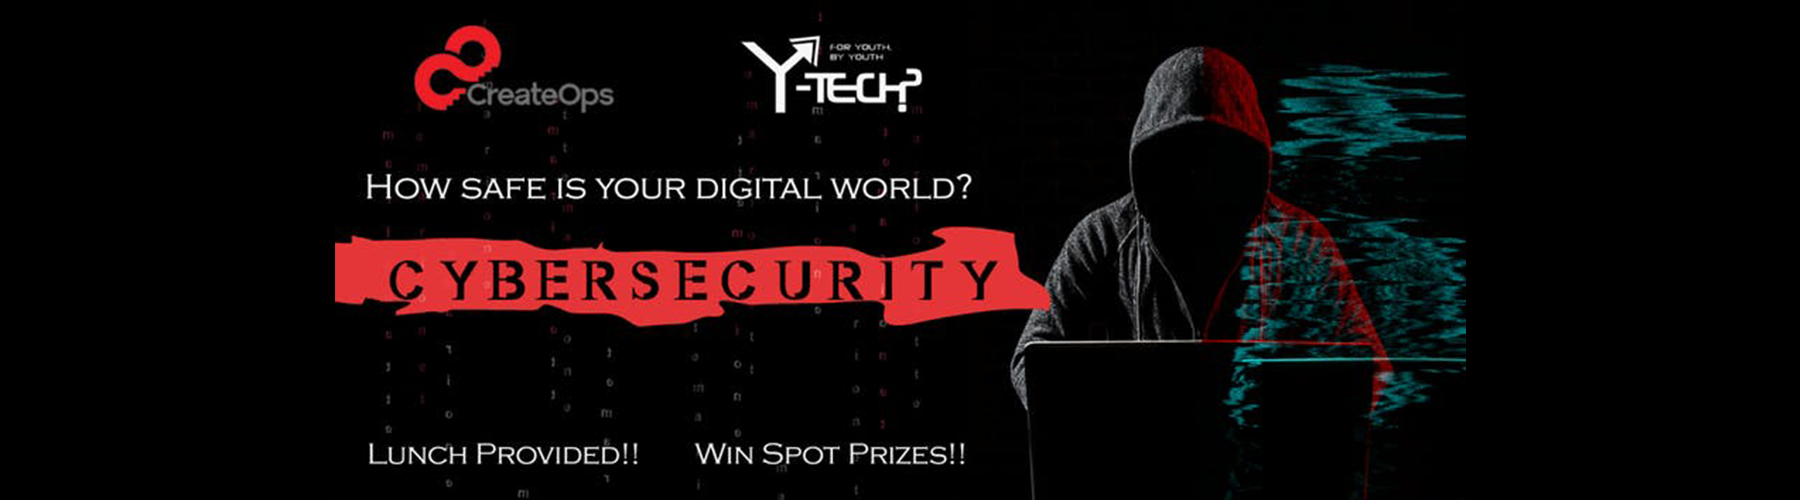 Y-Tech Cybersecurity